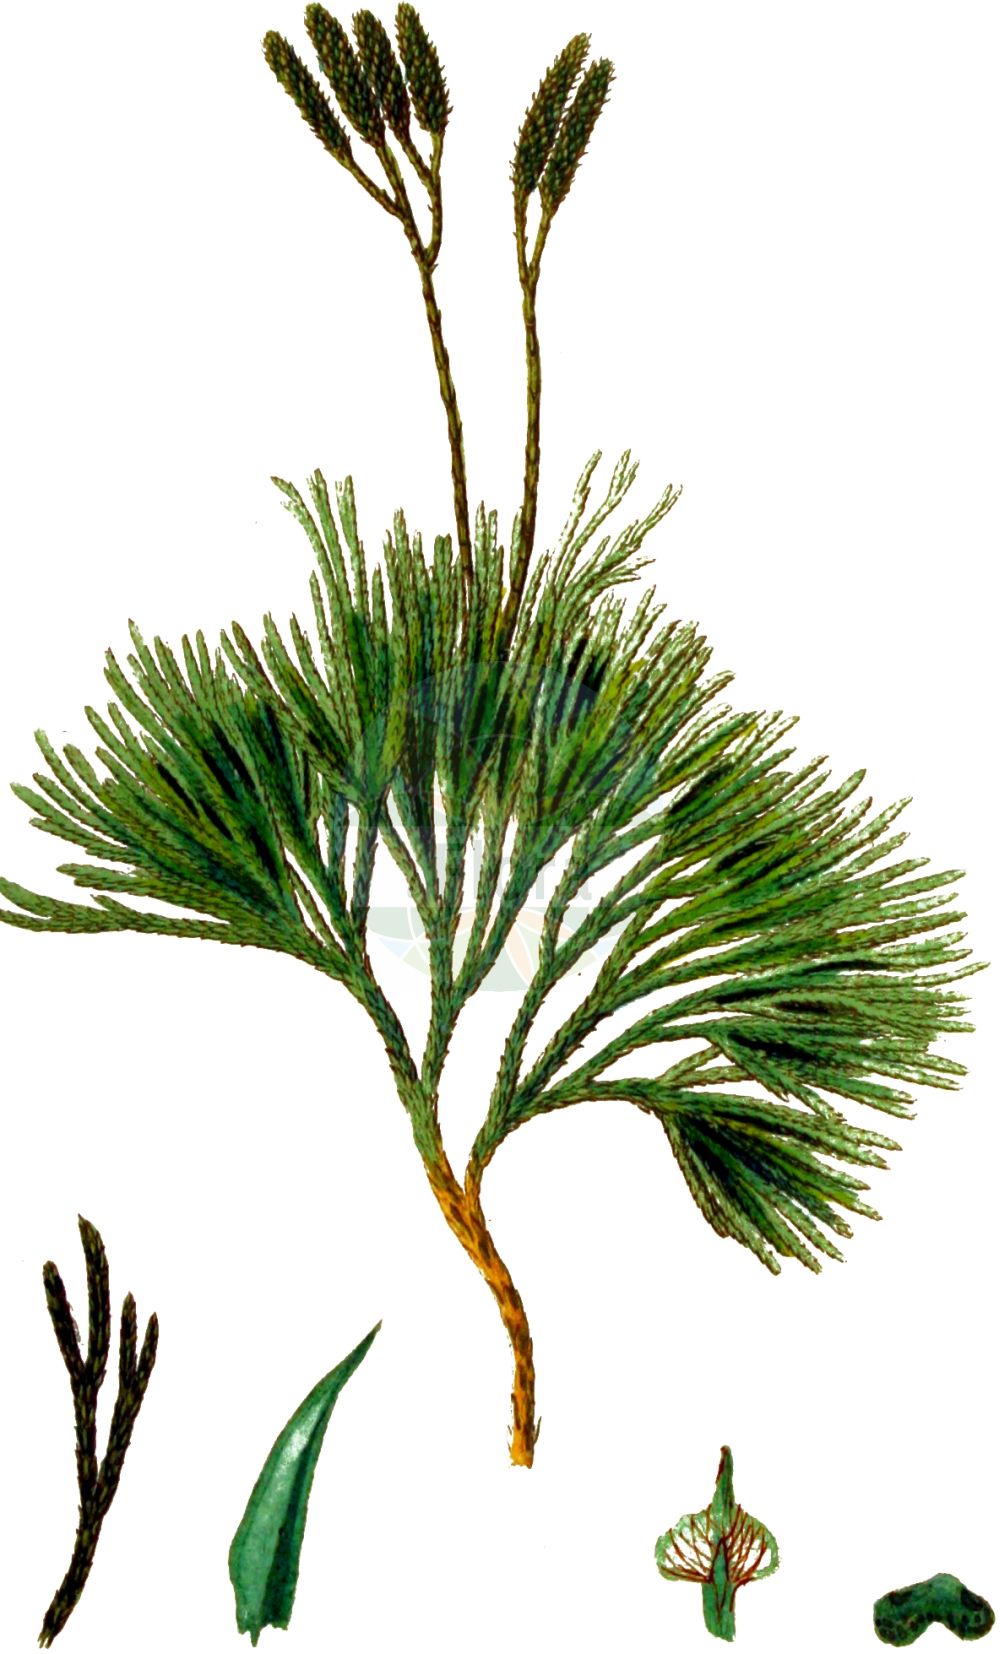 Historische Abbildung von Lycopodium complanatum (Gewöhnlicher Flachbärlapp - Issler's Clubmoss). Das Bild zeigt Blatt, Bluete, Frucht und Same. ---- Historical Drawing of Lycopodium complanatum (Gewöhnlicher Flachbärlapp - Issler's Clubmoss). The image is showing leaf, flower, fruit and seed.(Lycopodium complanatum,Gewöhnlicher Flachbärlapp,Issler's Clubmoss,Diphasiastrum complanatum,Diphasium anceps,Diphasium complanatum,Lycopodium anceps,Lycopodium complanatum,Lycopodium complanatum subsp. montellii,Gewoehnlicher Flachbaerlapp,Gewoehnlicher Flachbaerlapp,Issler's Clubmoss,Flat-stemmed Clubmoss,Groundcedar,Complanate Clubmoss,Lycopodium,Bärlapp,Clubmoss,Lycopodiaceae,Bärlappgewächse,Clubmoss family,Blatt,Bluete,Frucht,Same,leaf,flower,fruit,seed,Kops (1800-1934))